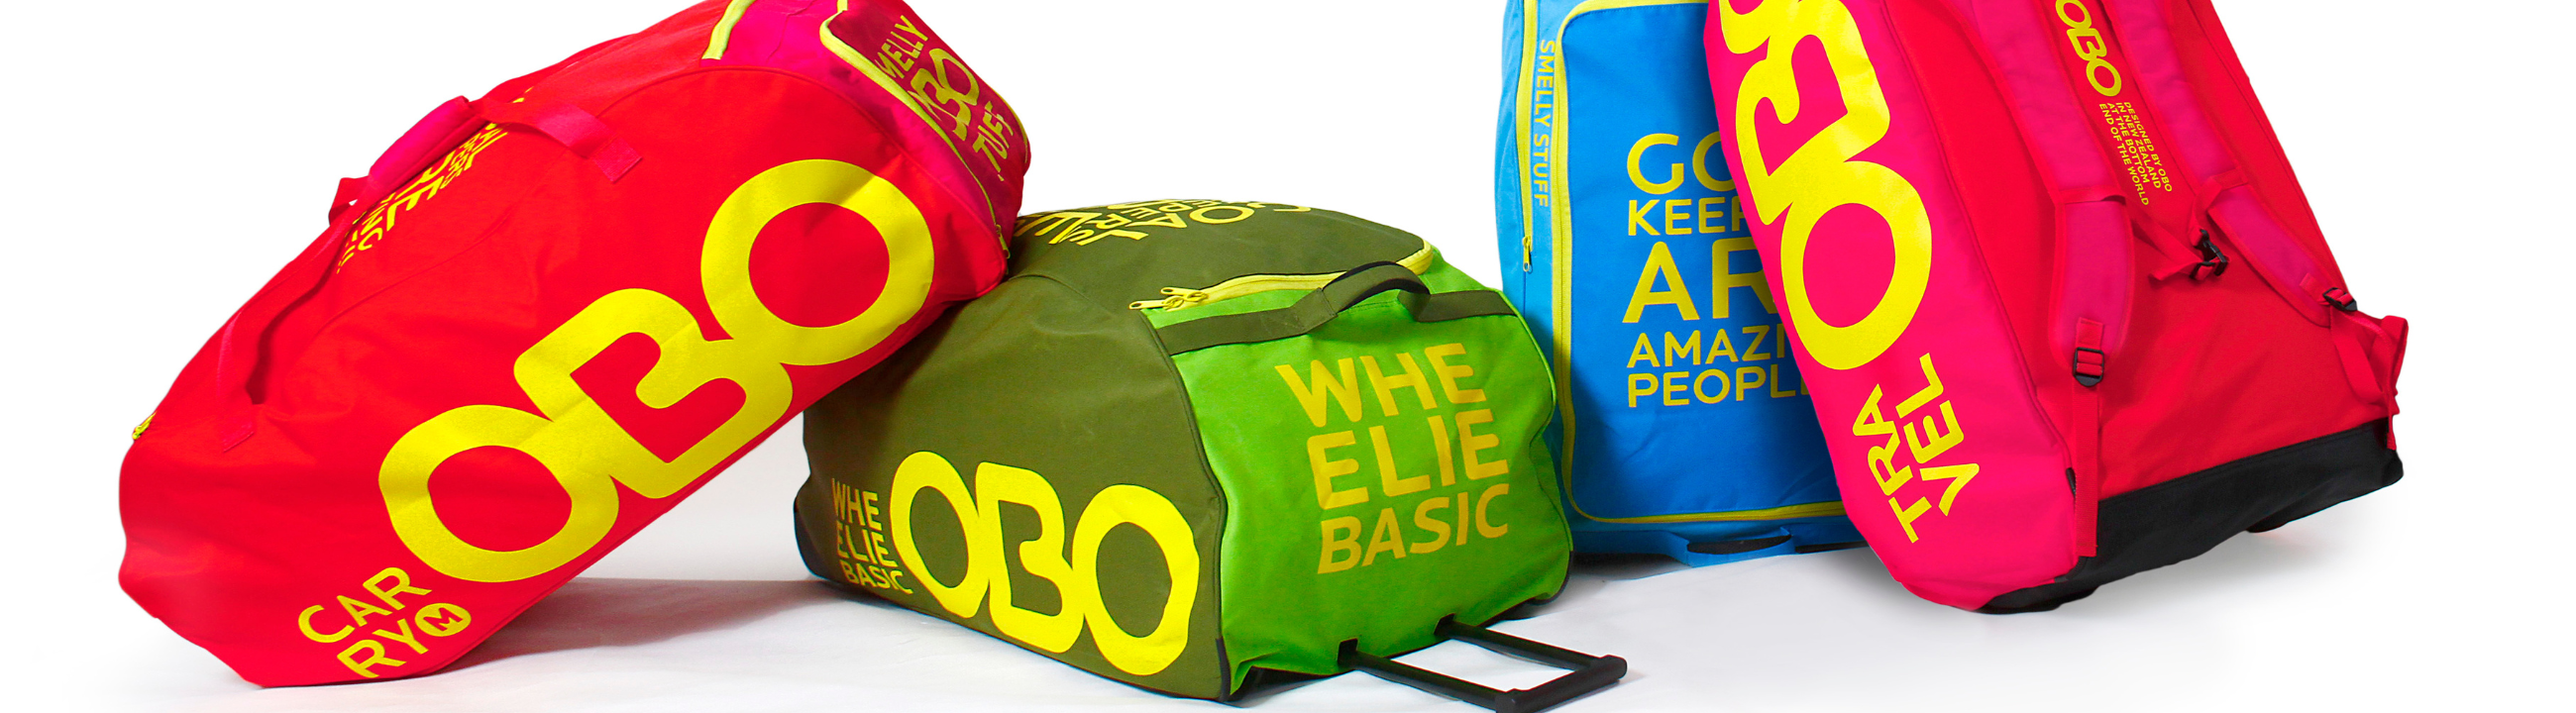 OBO Goalkeeping Bags